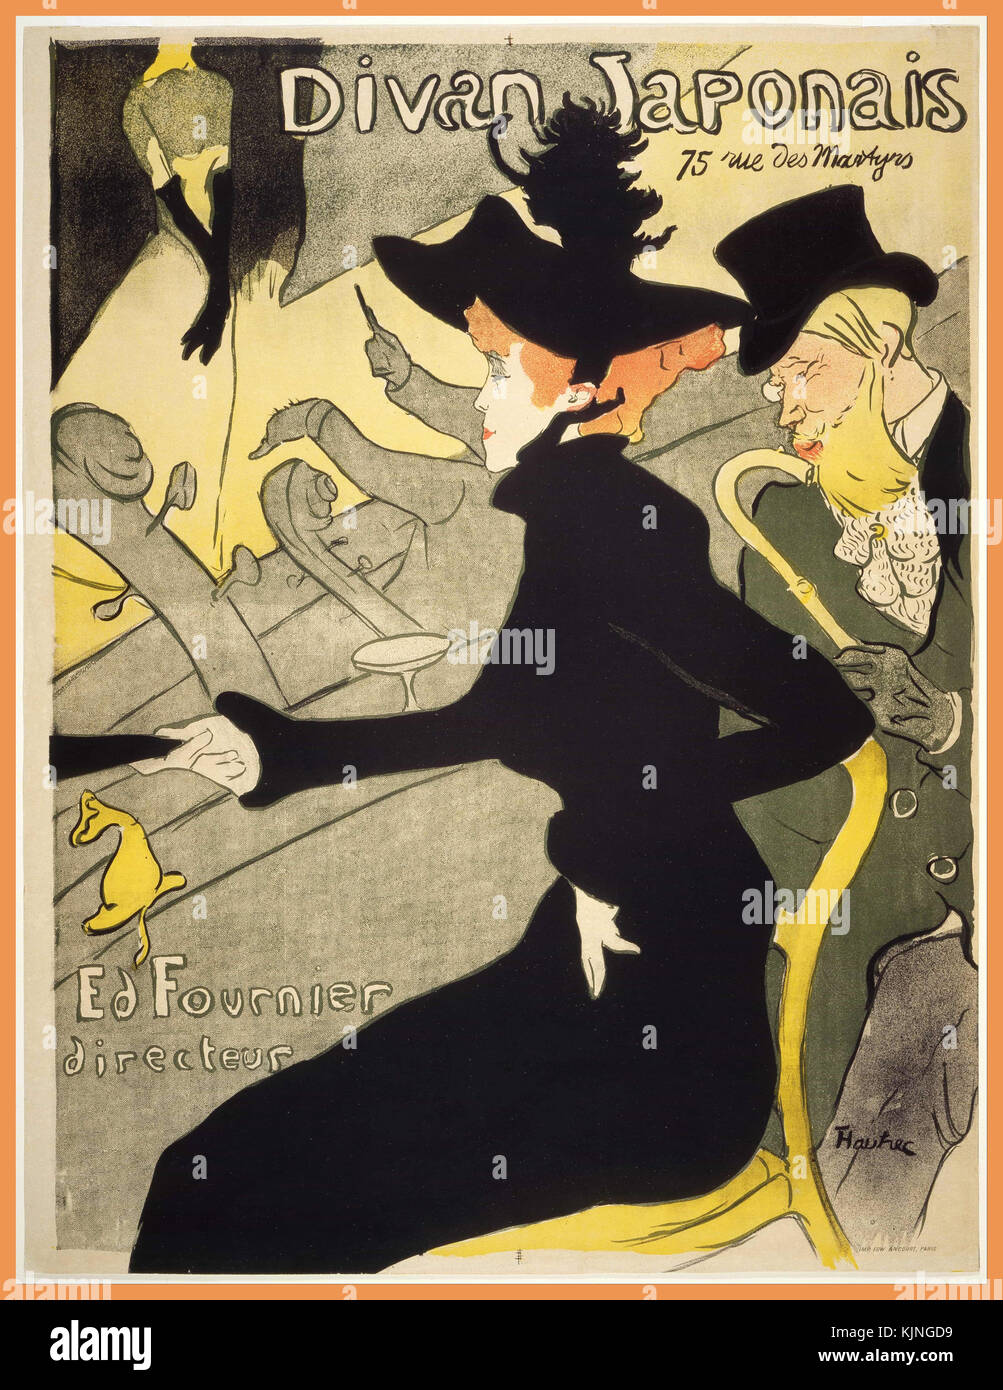 Vintage Toulouse Lautrec Poster 'DIvan Japonais' einer Lithographie Poster des französischen Künstlers Henri de Toulouse-Lautrec Es erstellt wurde ein Café-chantant, war zu der Zeit bekannt als Divan Japonais Das Poster zeigt drei Personen vom Montmartre aus der Zeit des Toulouse-Lautrec. ca. 1893-1894 Inserieren Stockfoto